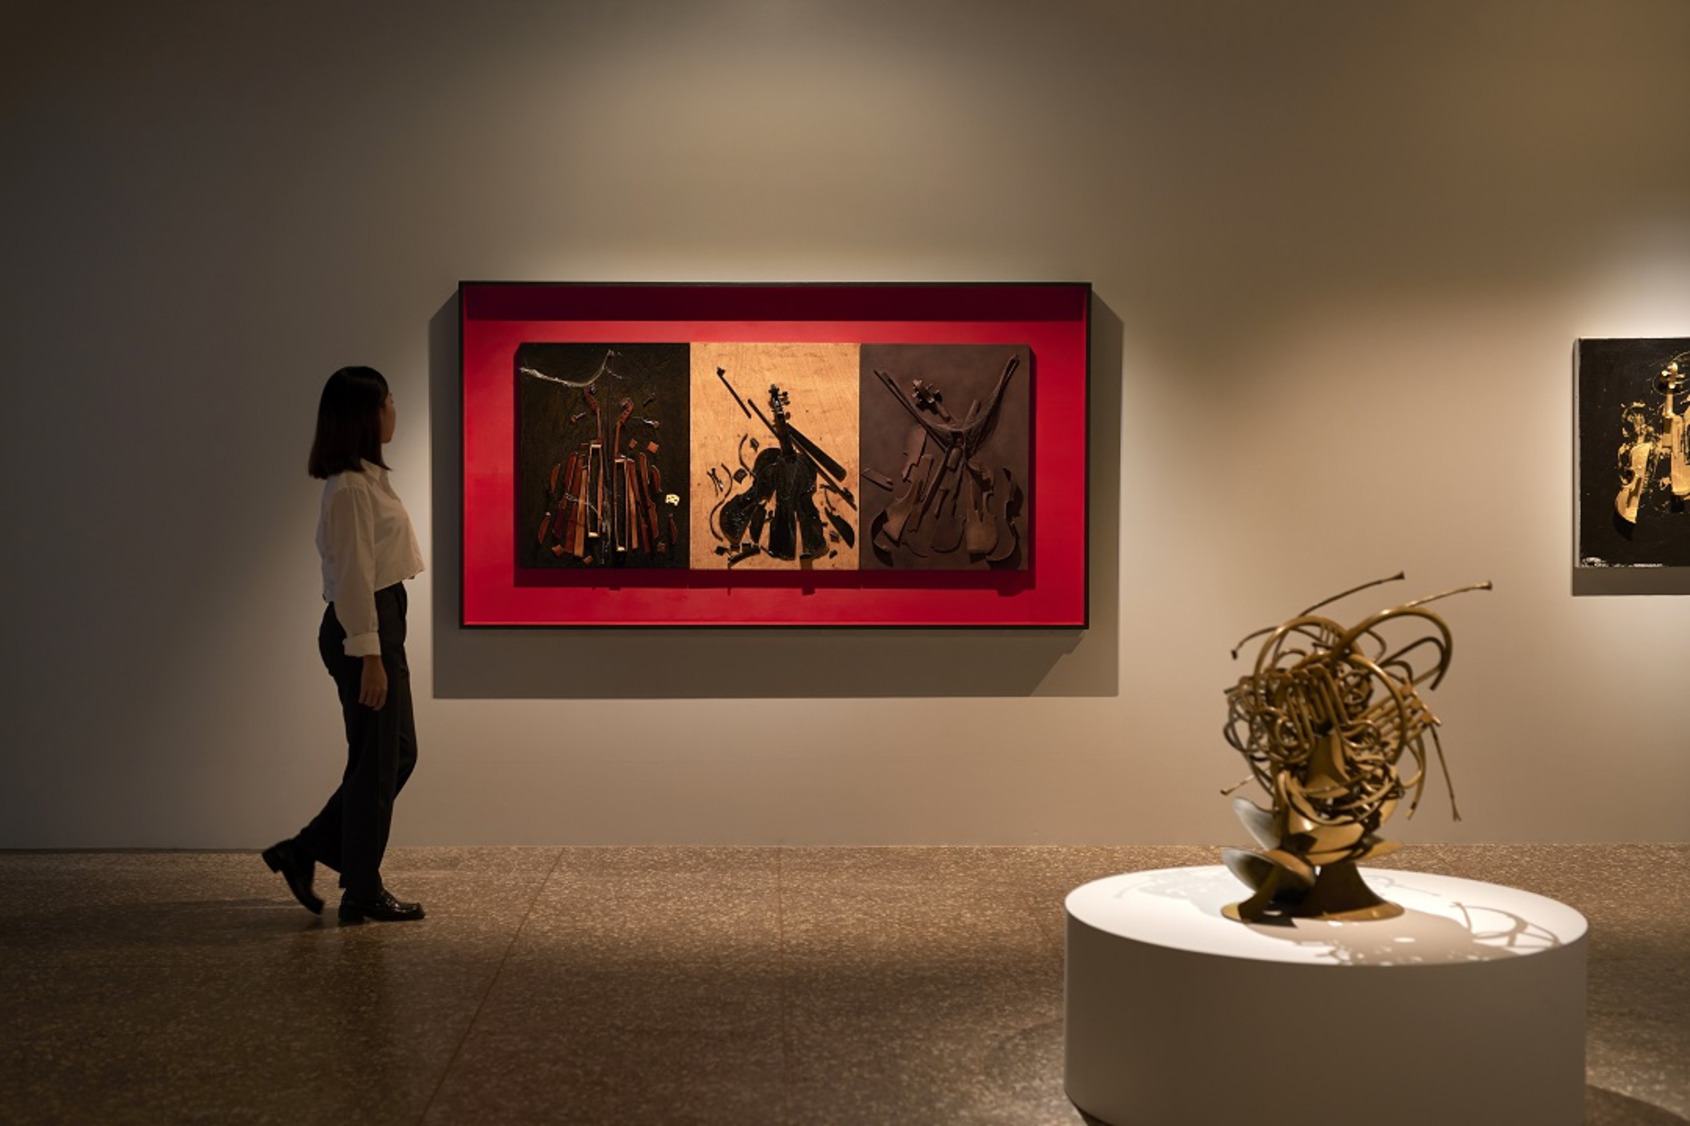  永添藝術金馬賓館當代美術館展場畫面。阿曼作品《木頭上的激烈》、《Mumuyé》、《無題》。©ALIEN Art